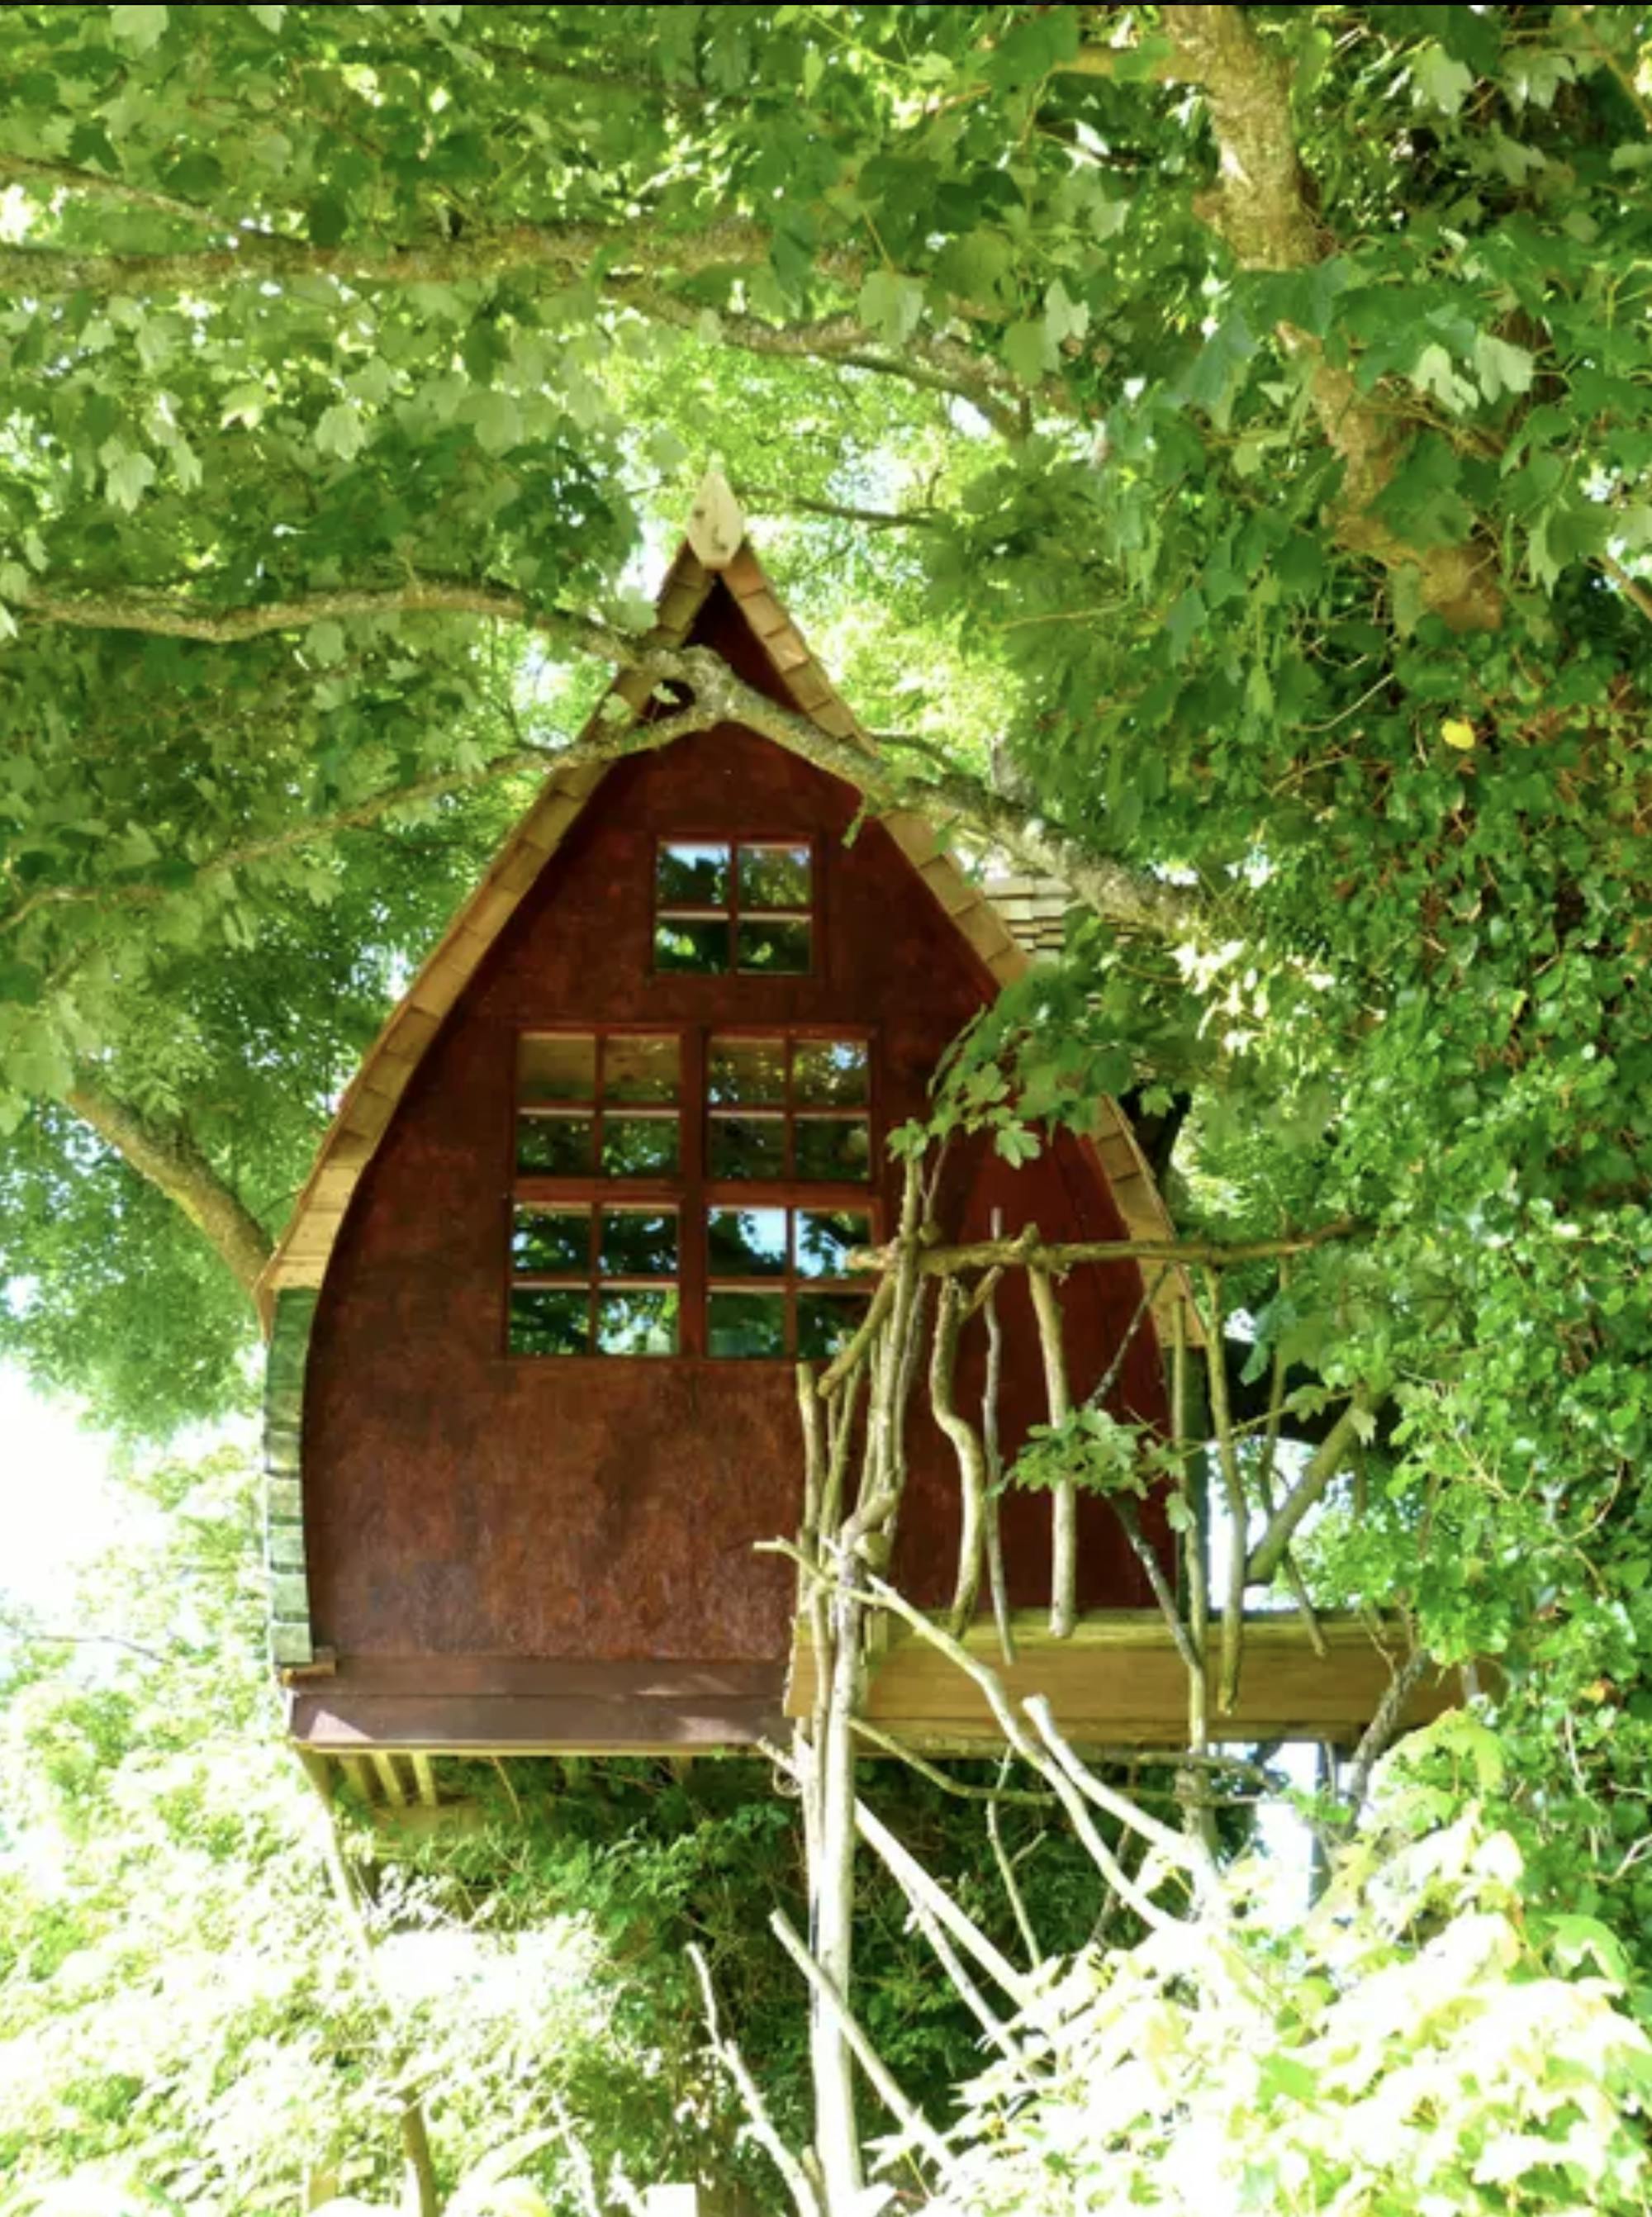 Domek na drzewie znajduje się w samym sercu natury, otoczony licznymi drzewami. Kształt małego domku na drzewie przypomina mały, uroczy domek czarownicy.